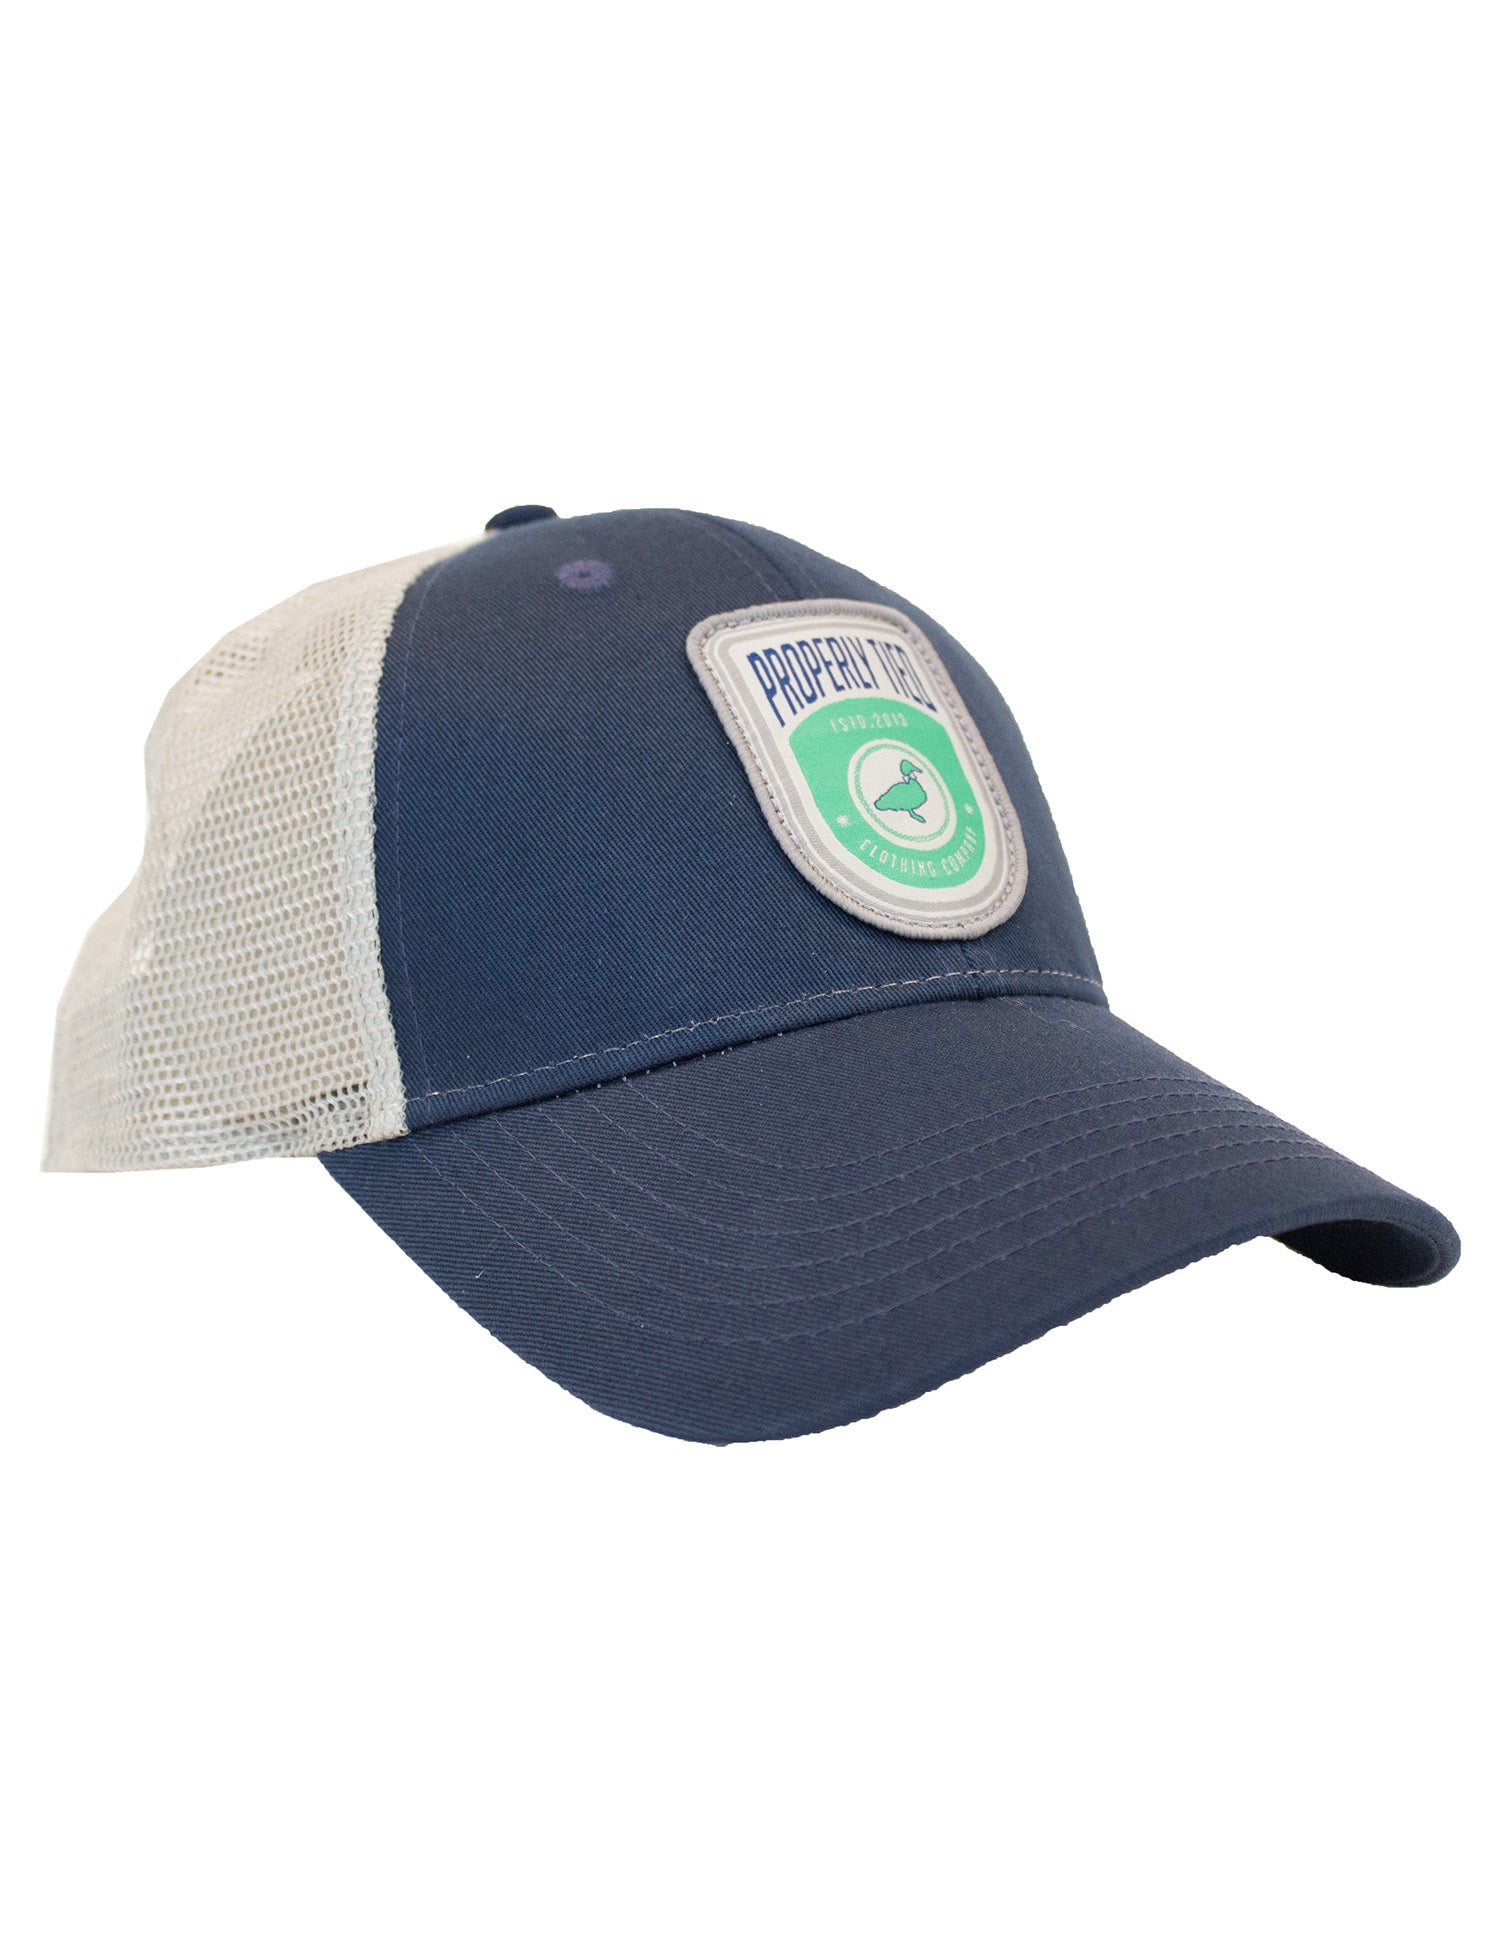 Trucker Hat Shield Logo